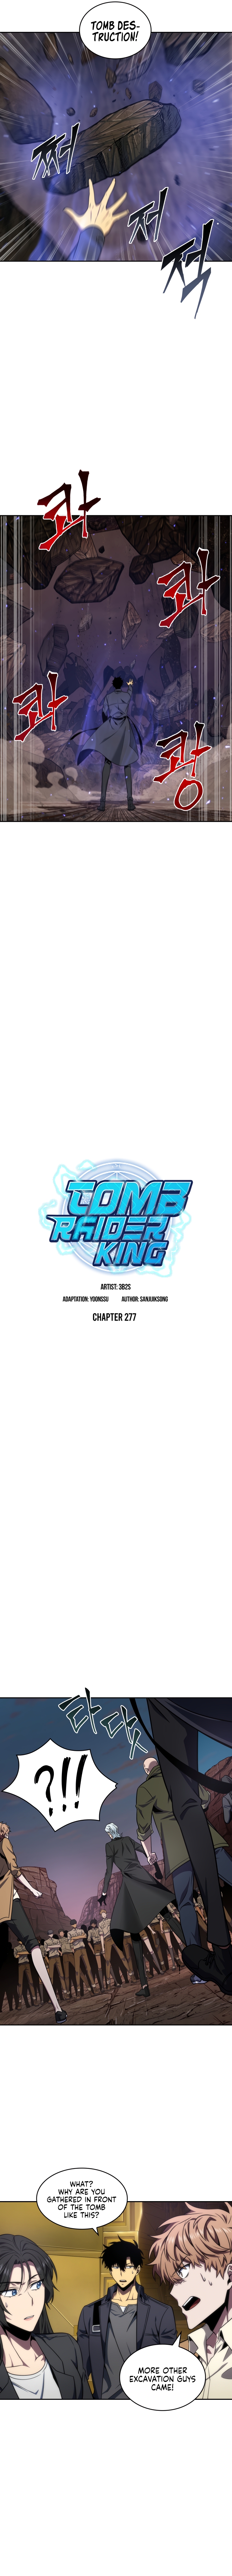 Tomb Raider King image